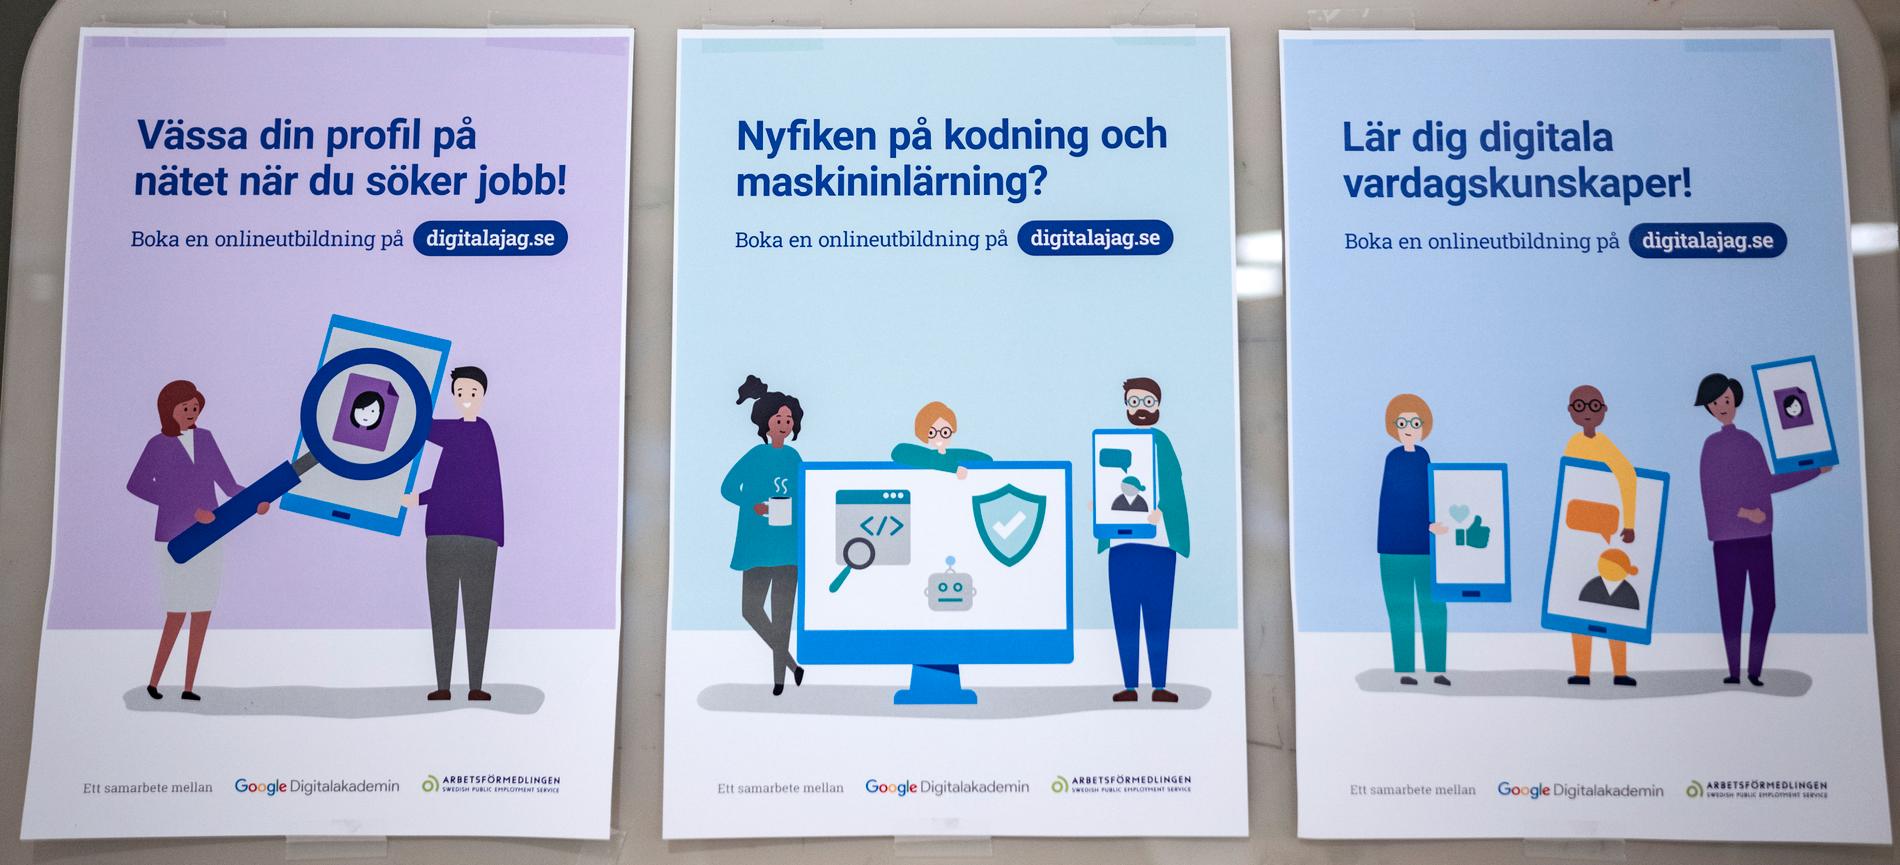 Tips till arbetssökande på Arbetsförmedlingen i Malmö.